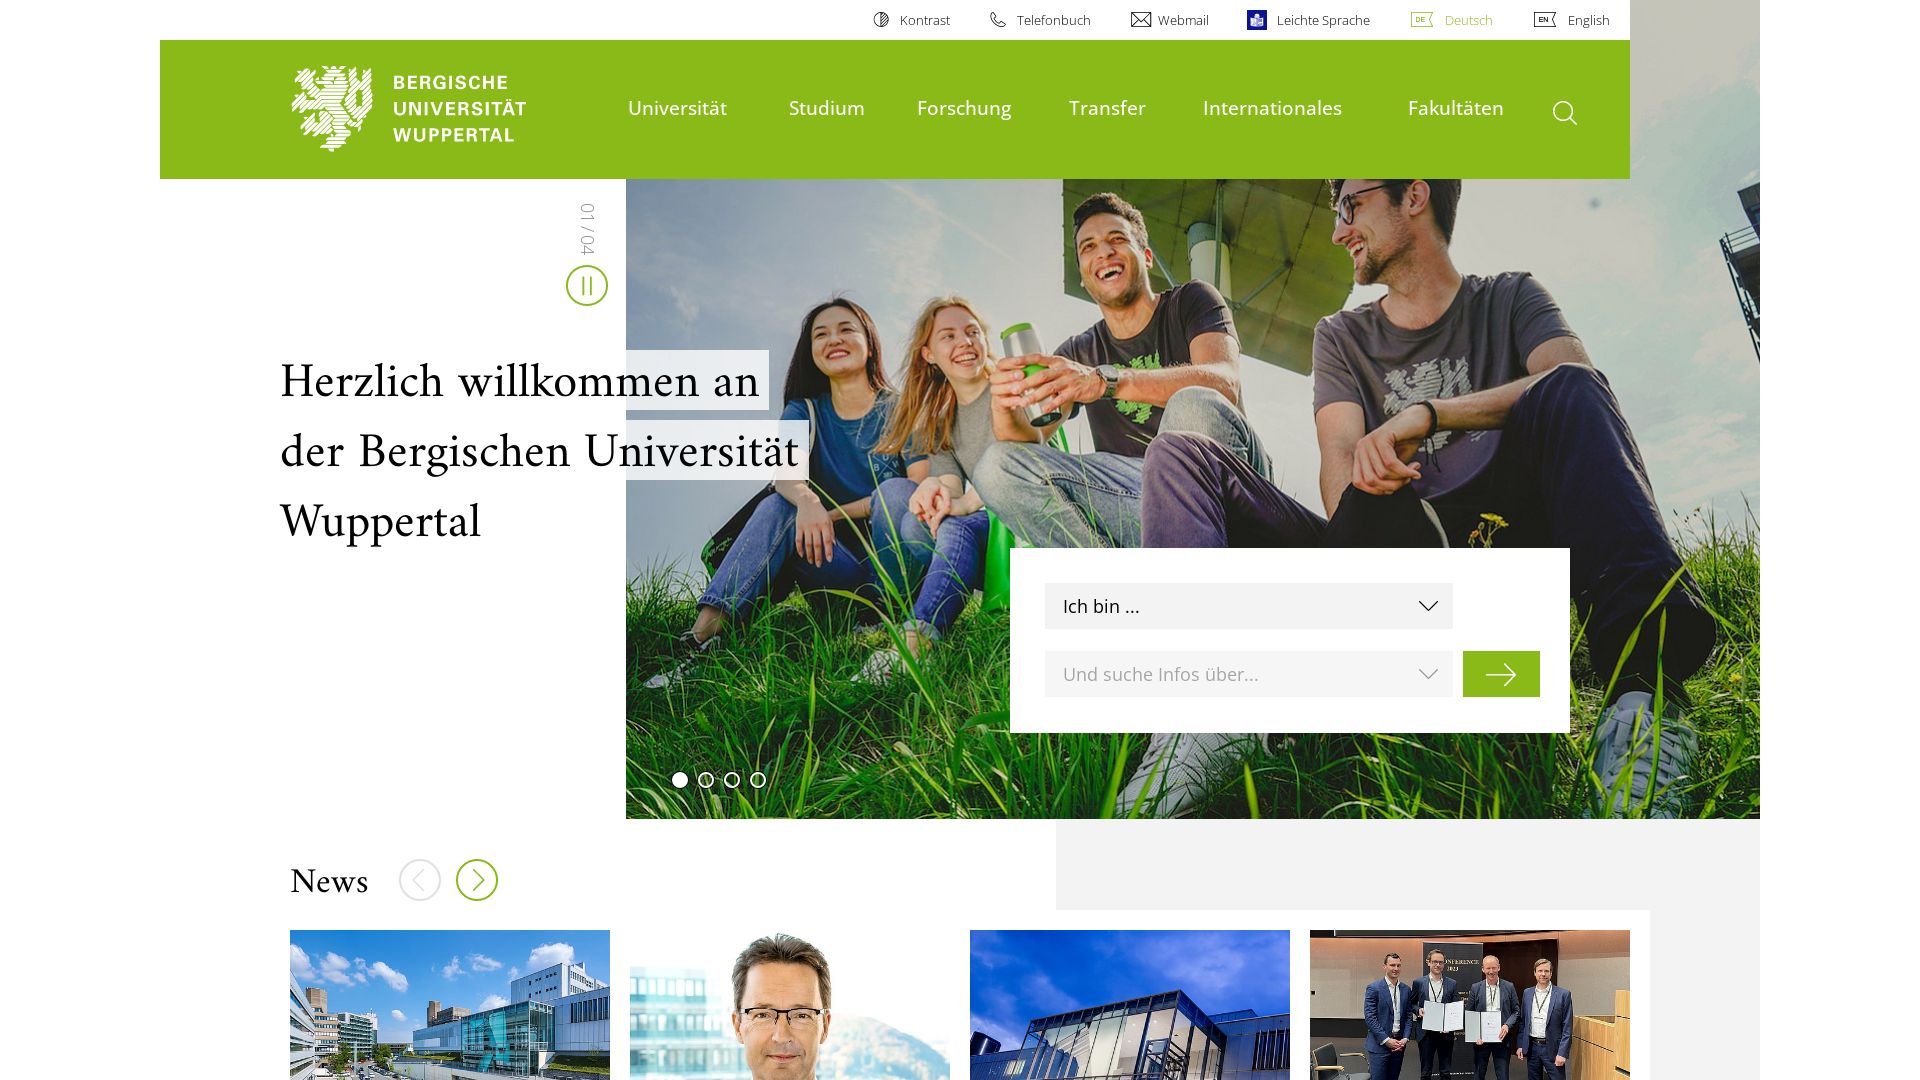 Website status uni-wuppertal.de is   ONLINE